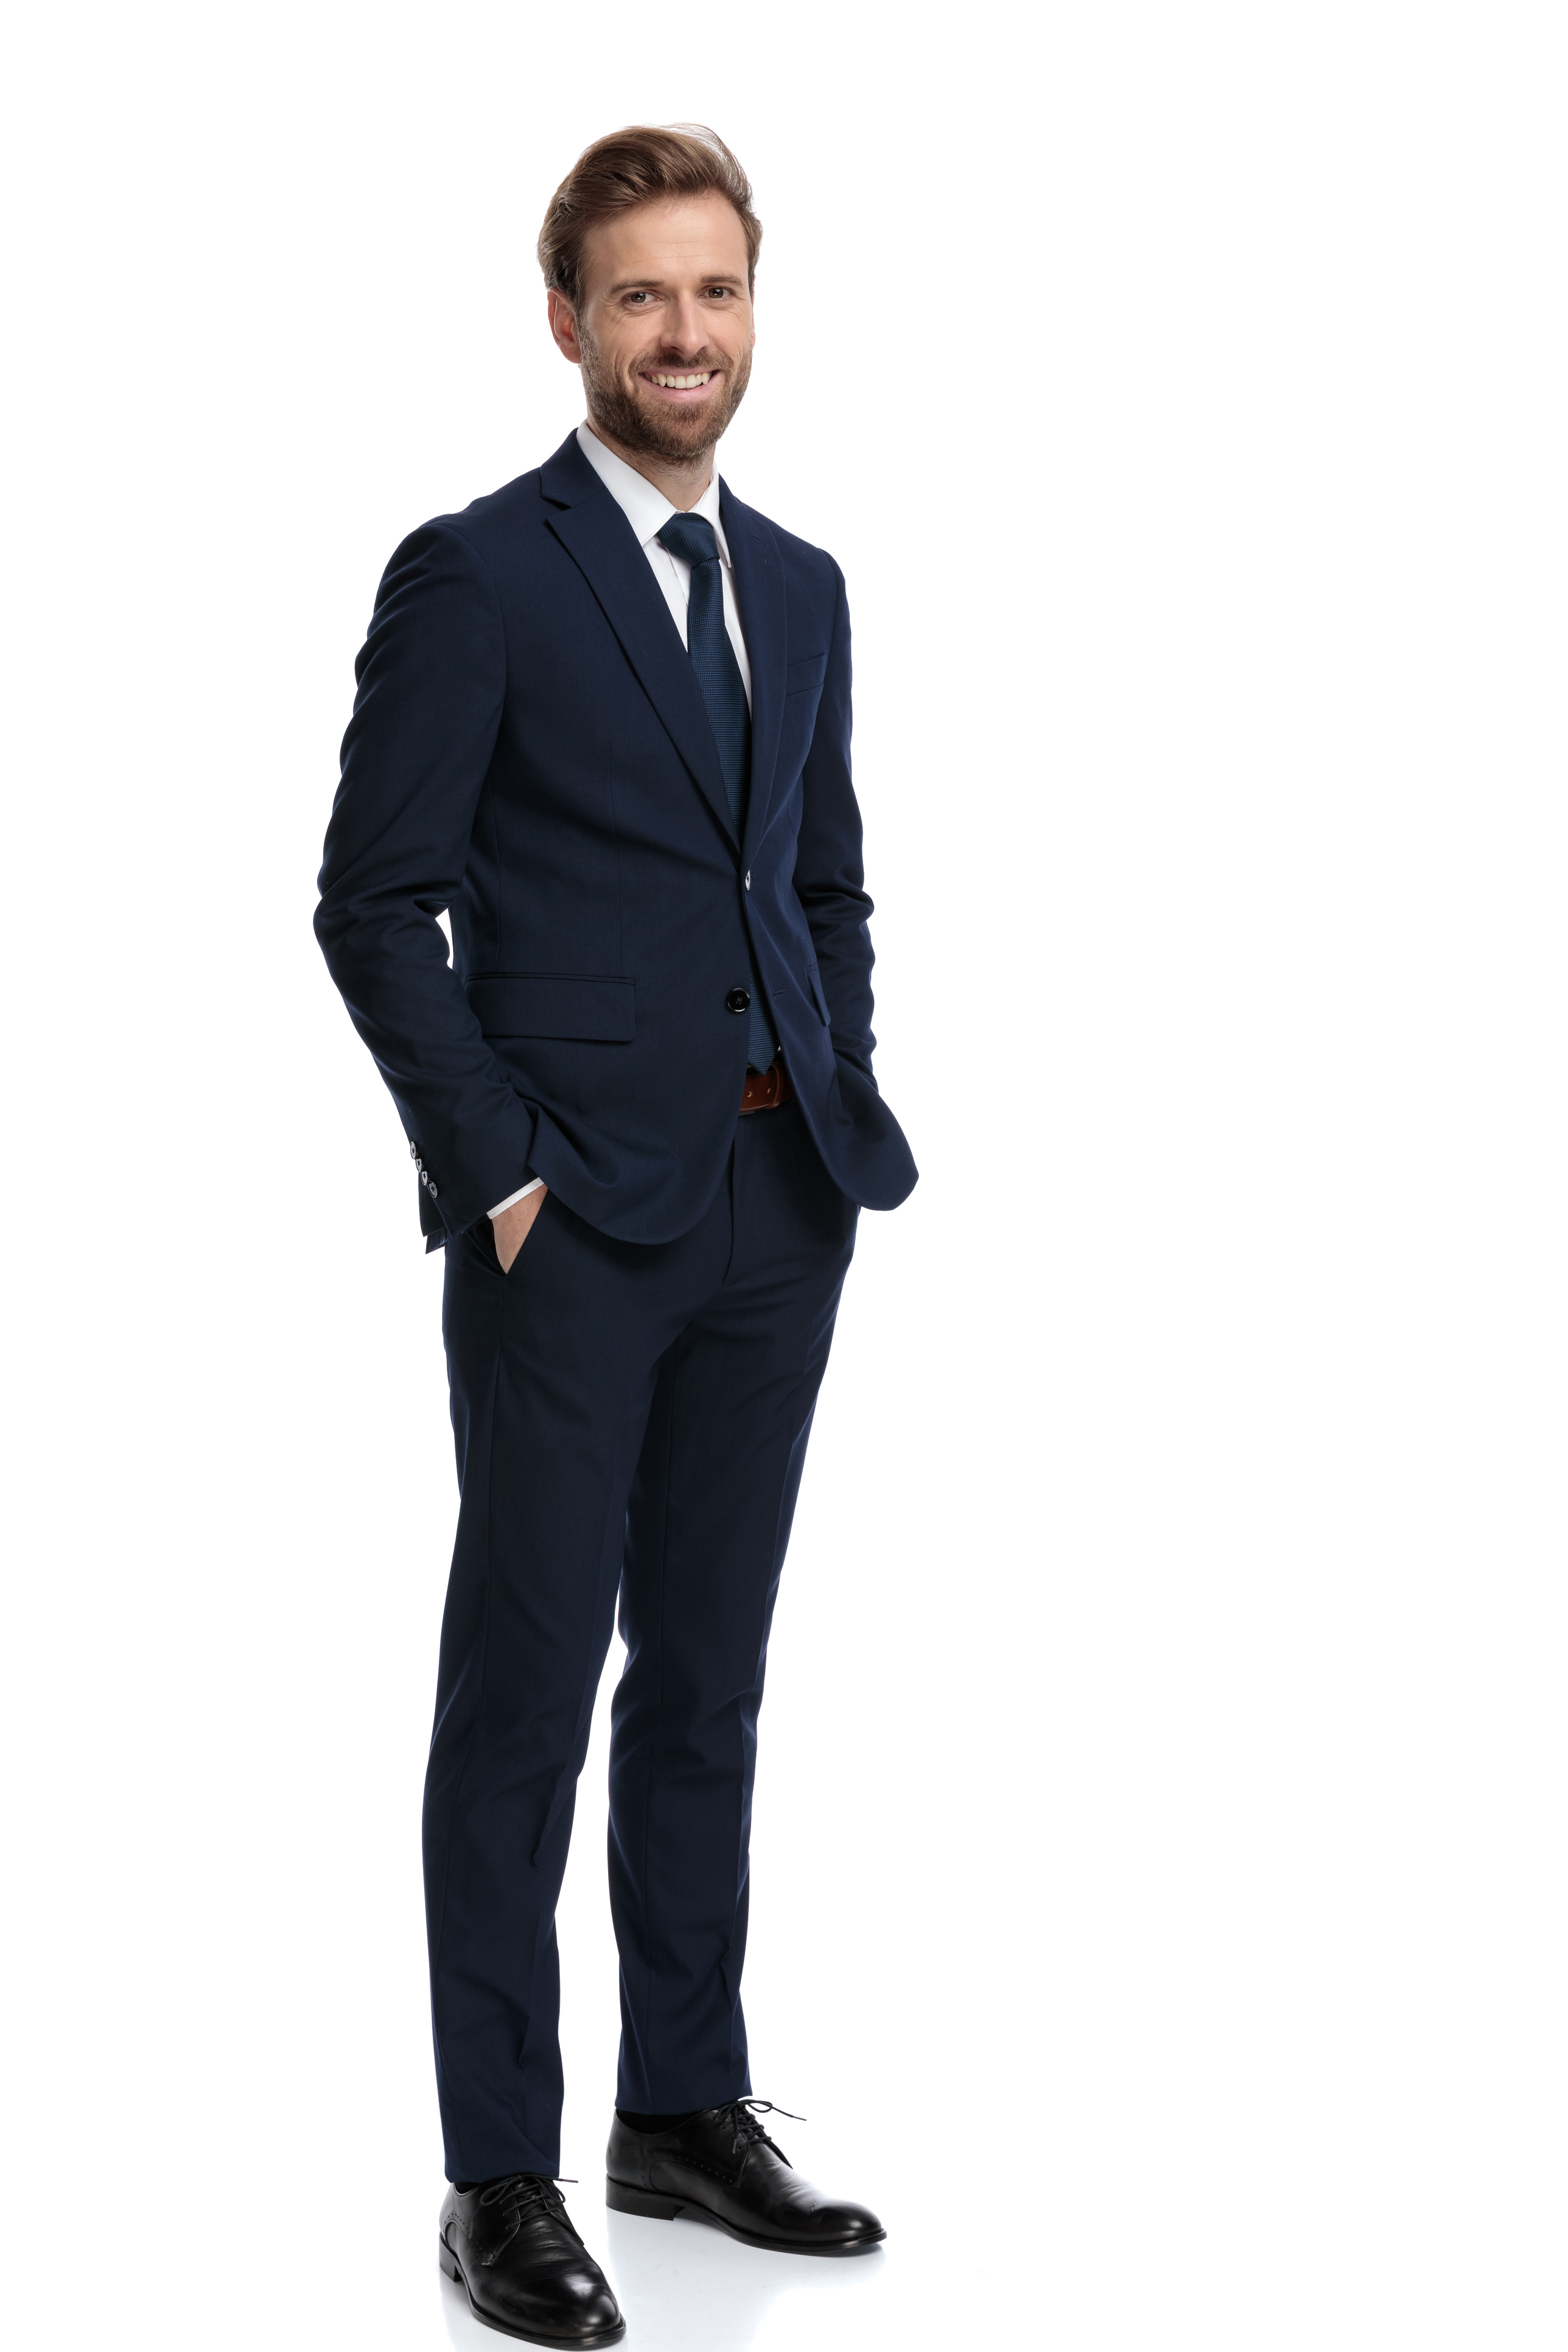 Smart business attire suit formal business attire outfit black tie